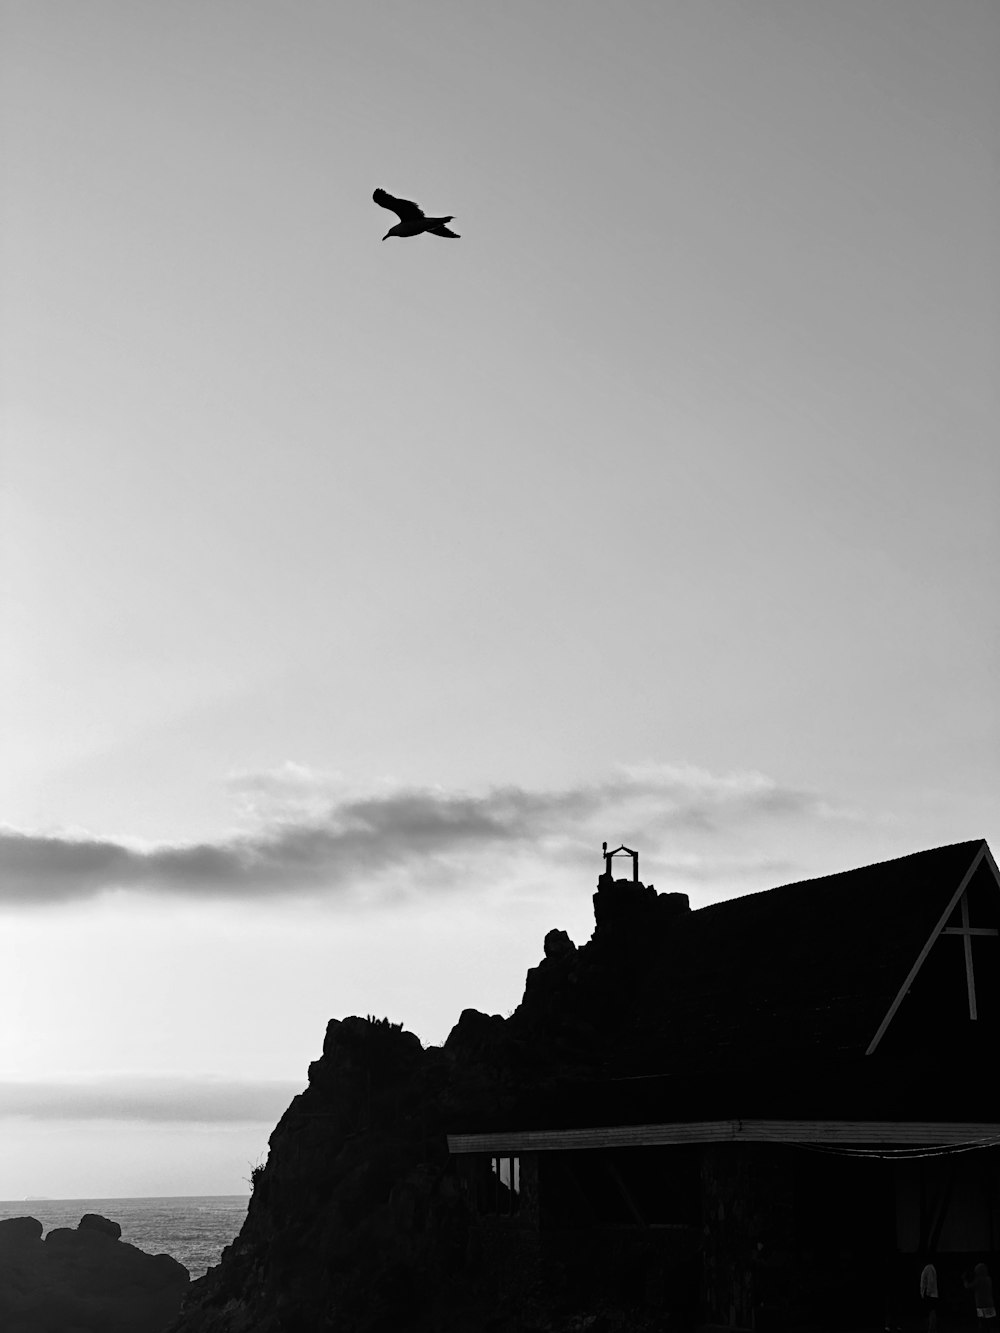 une photo en noir et blanc d’un oiseau survolant une maison